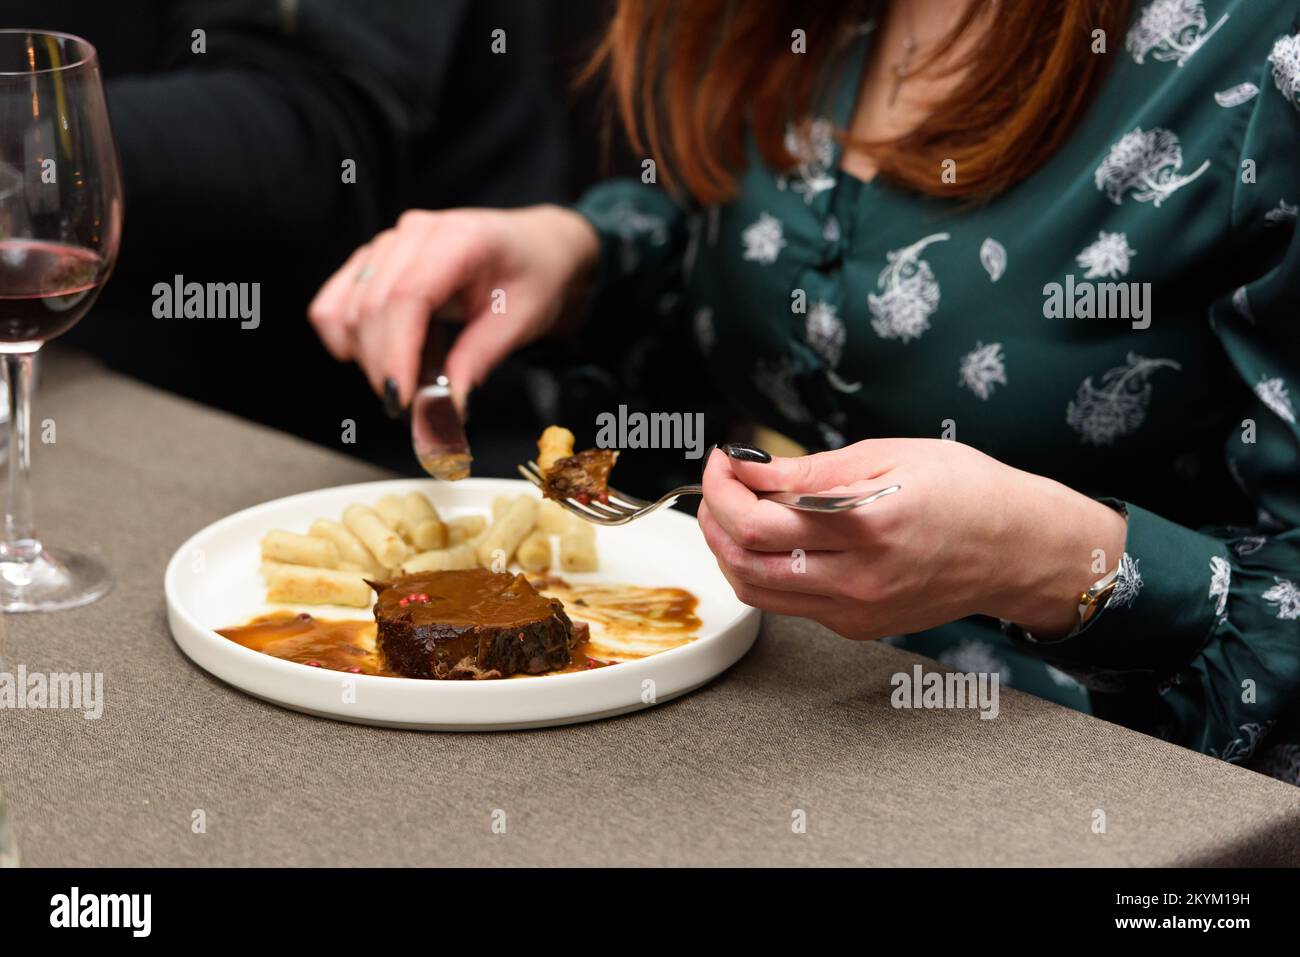 Femme mangeant pasticada avec gnocchi, ragoût de boeuf dans une sauce. Cuisine croate Banque D'Images